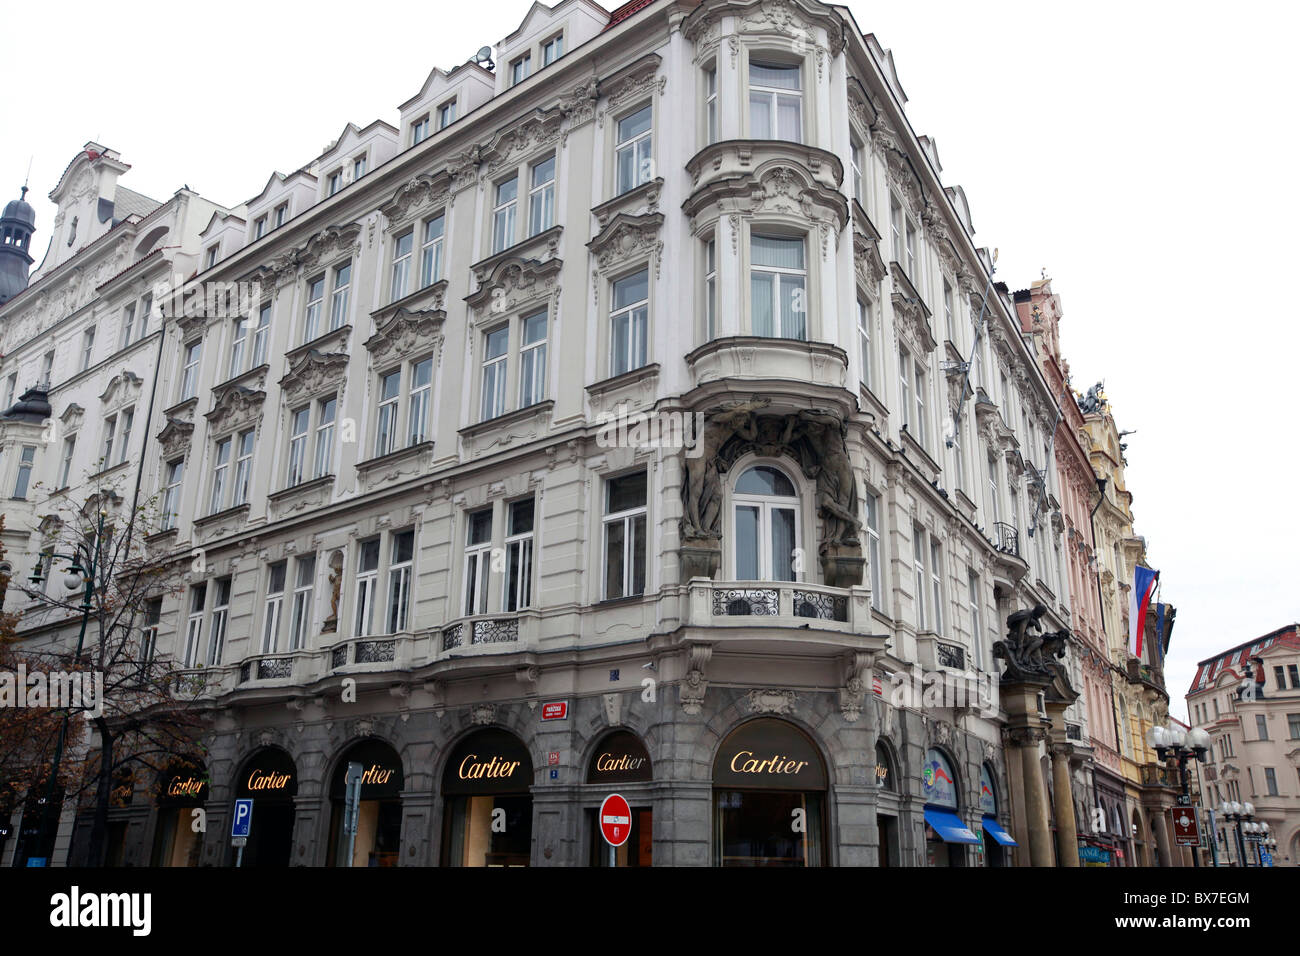 Original Cartier store is seen in the 